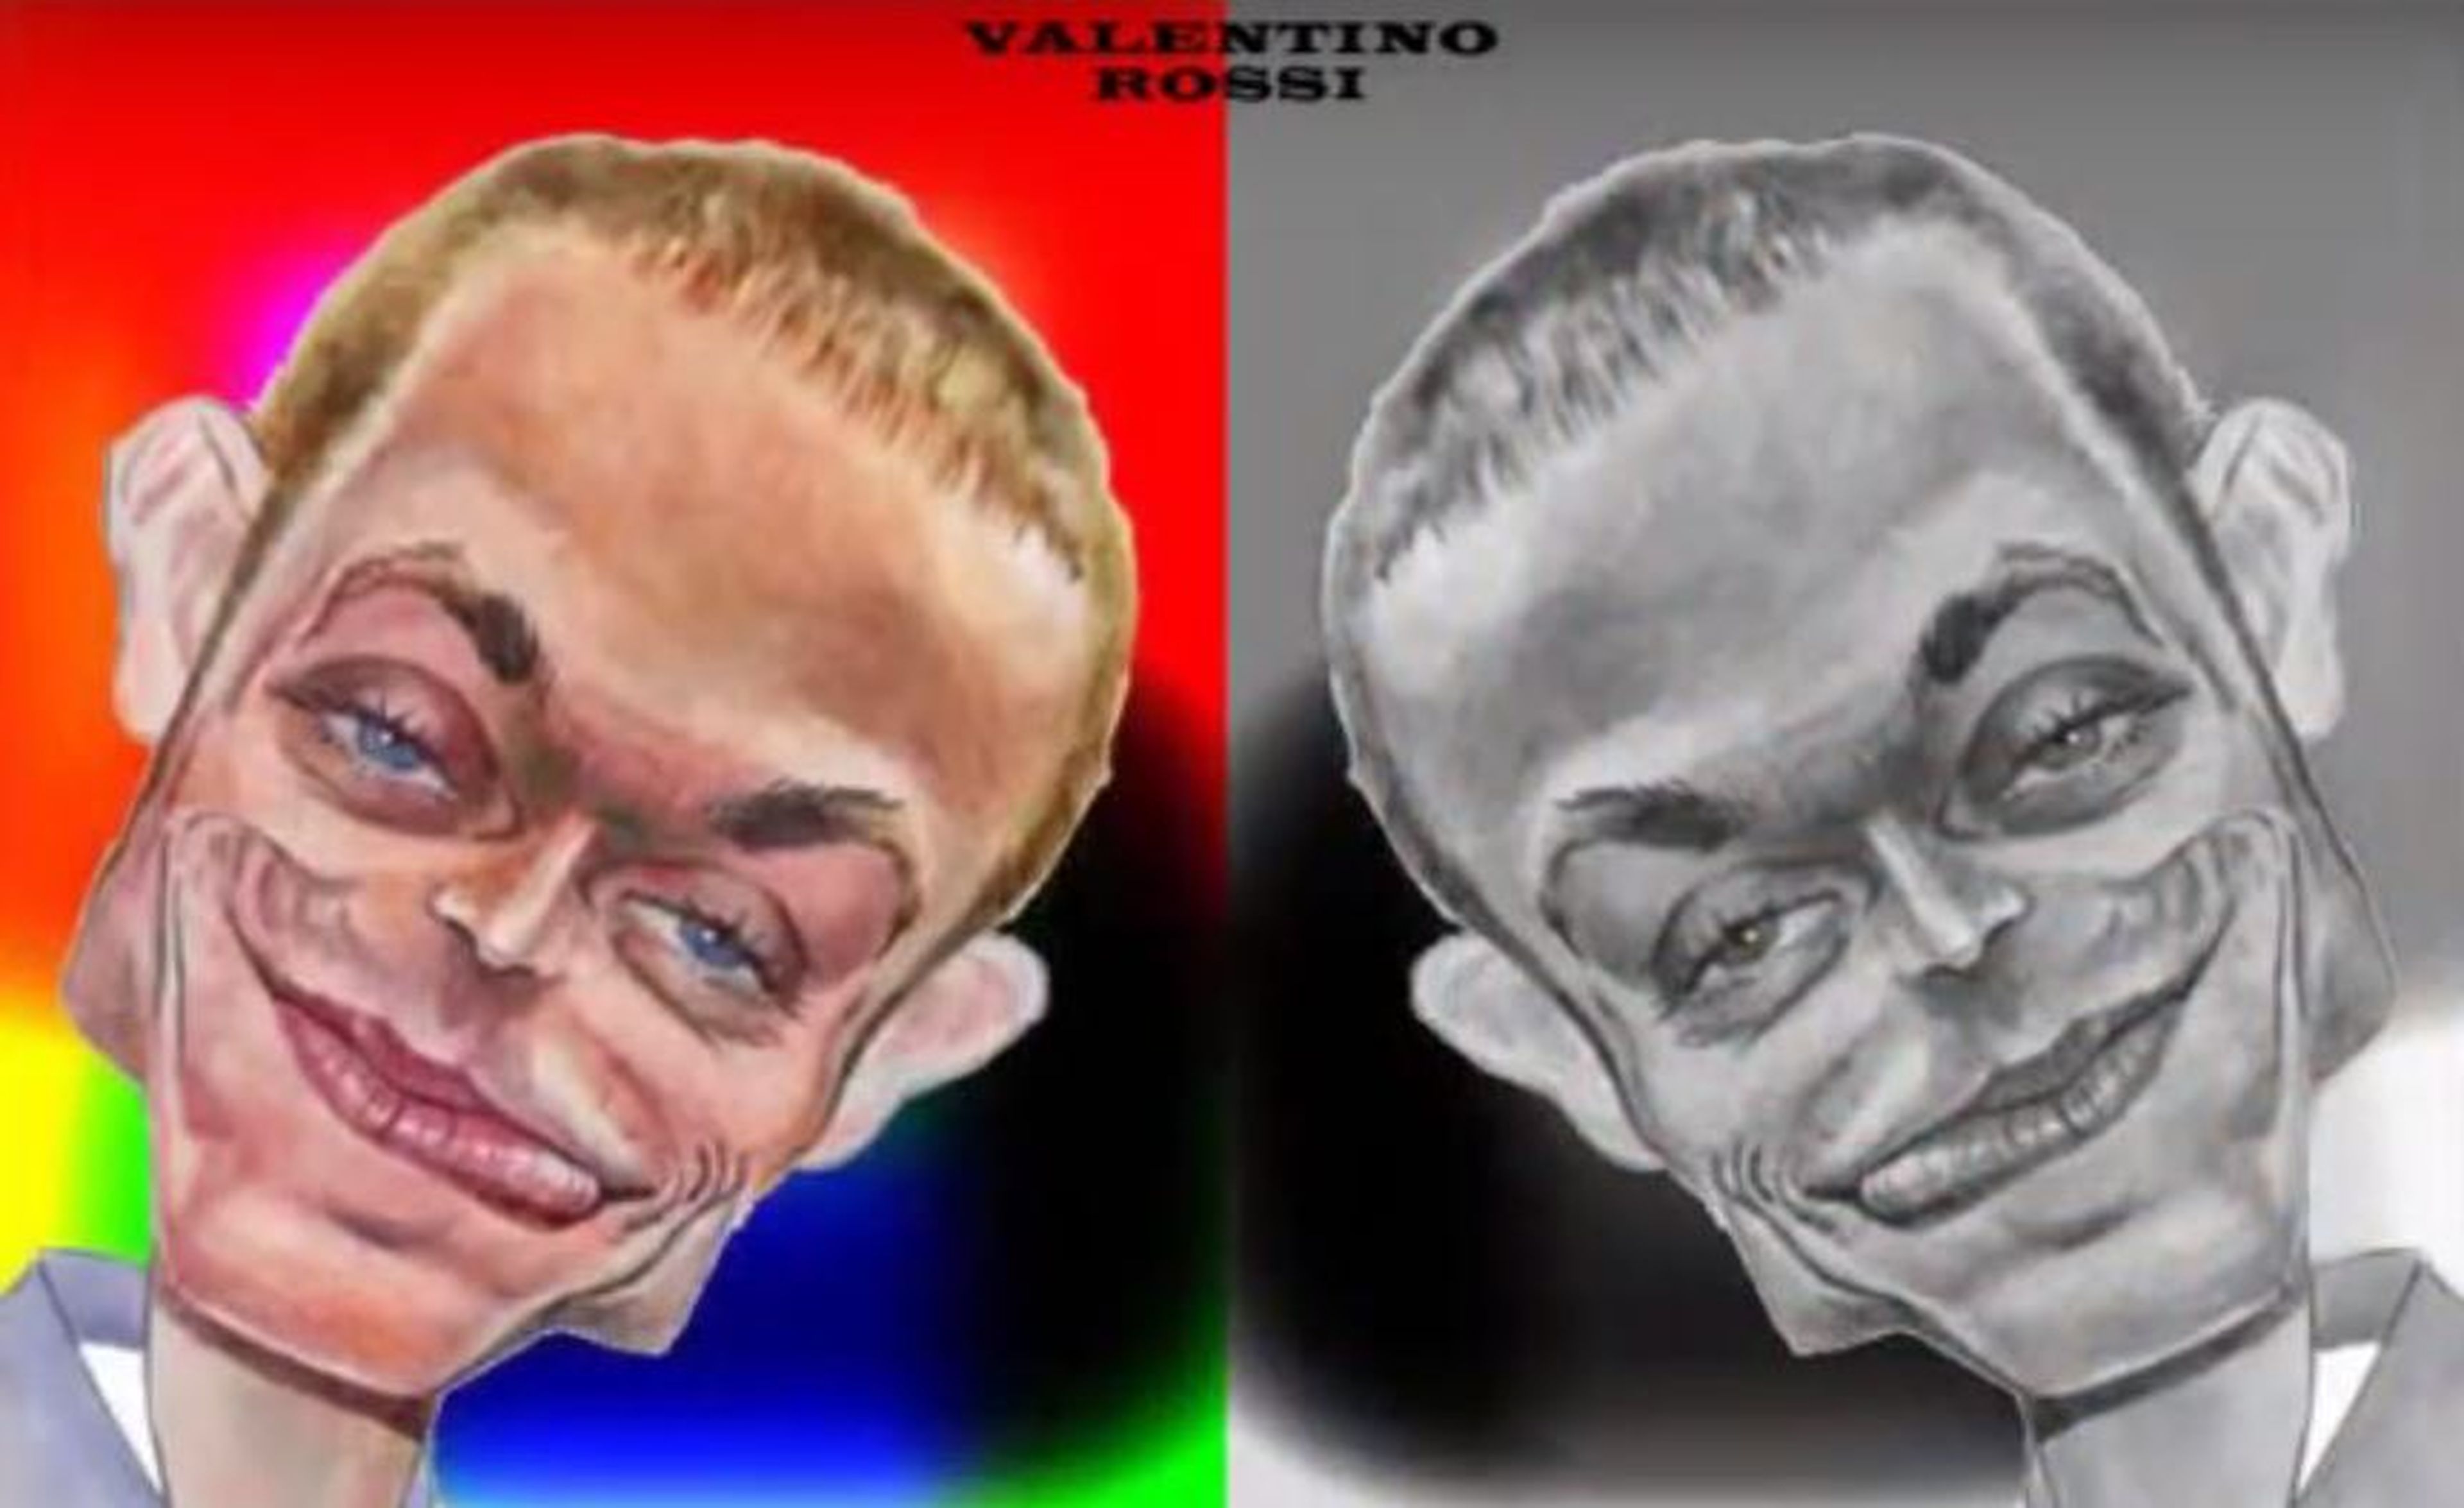 Colección de caricaturas de Valentino Rossi